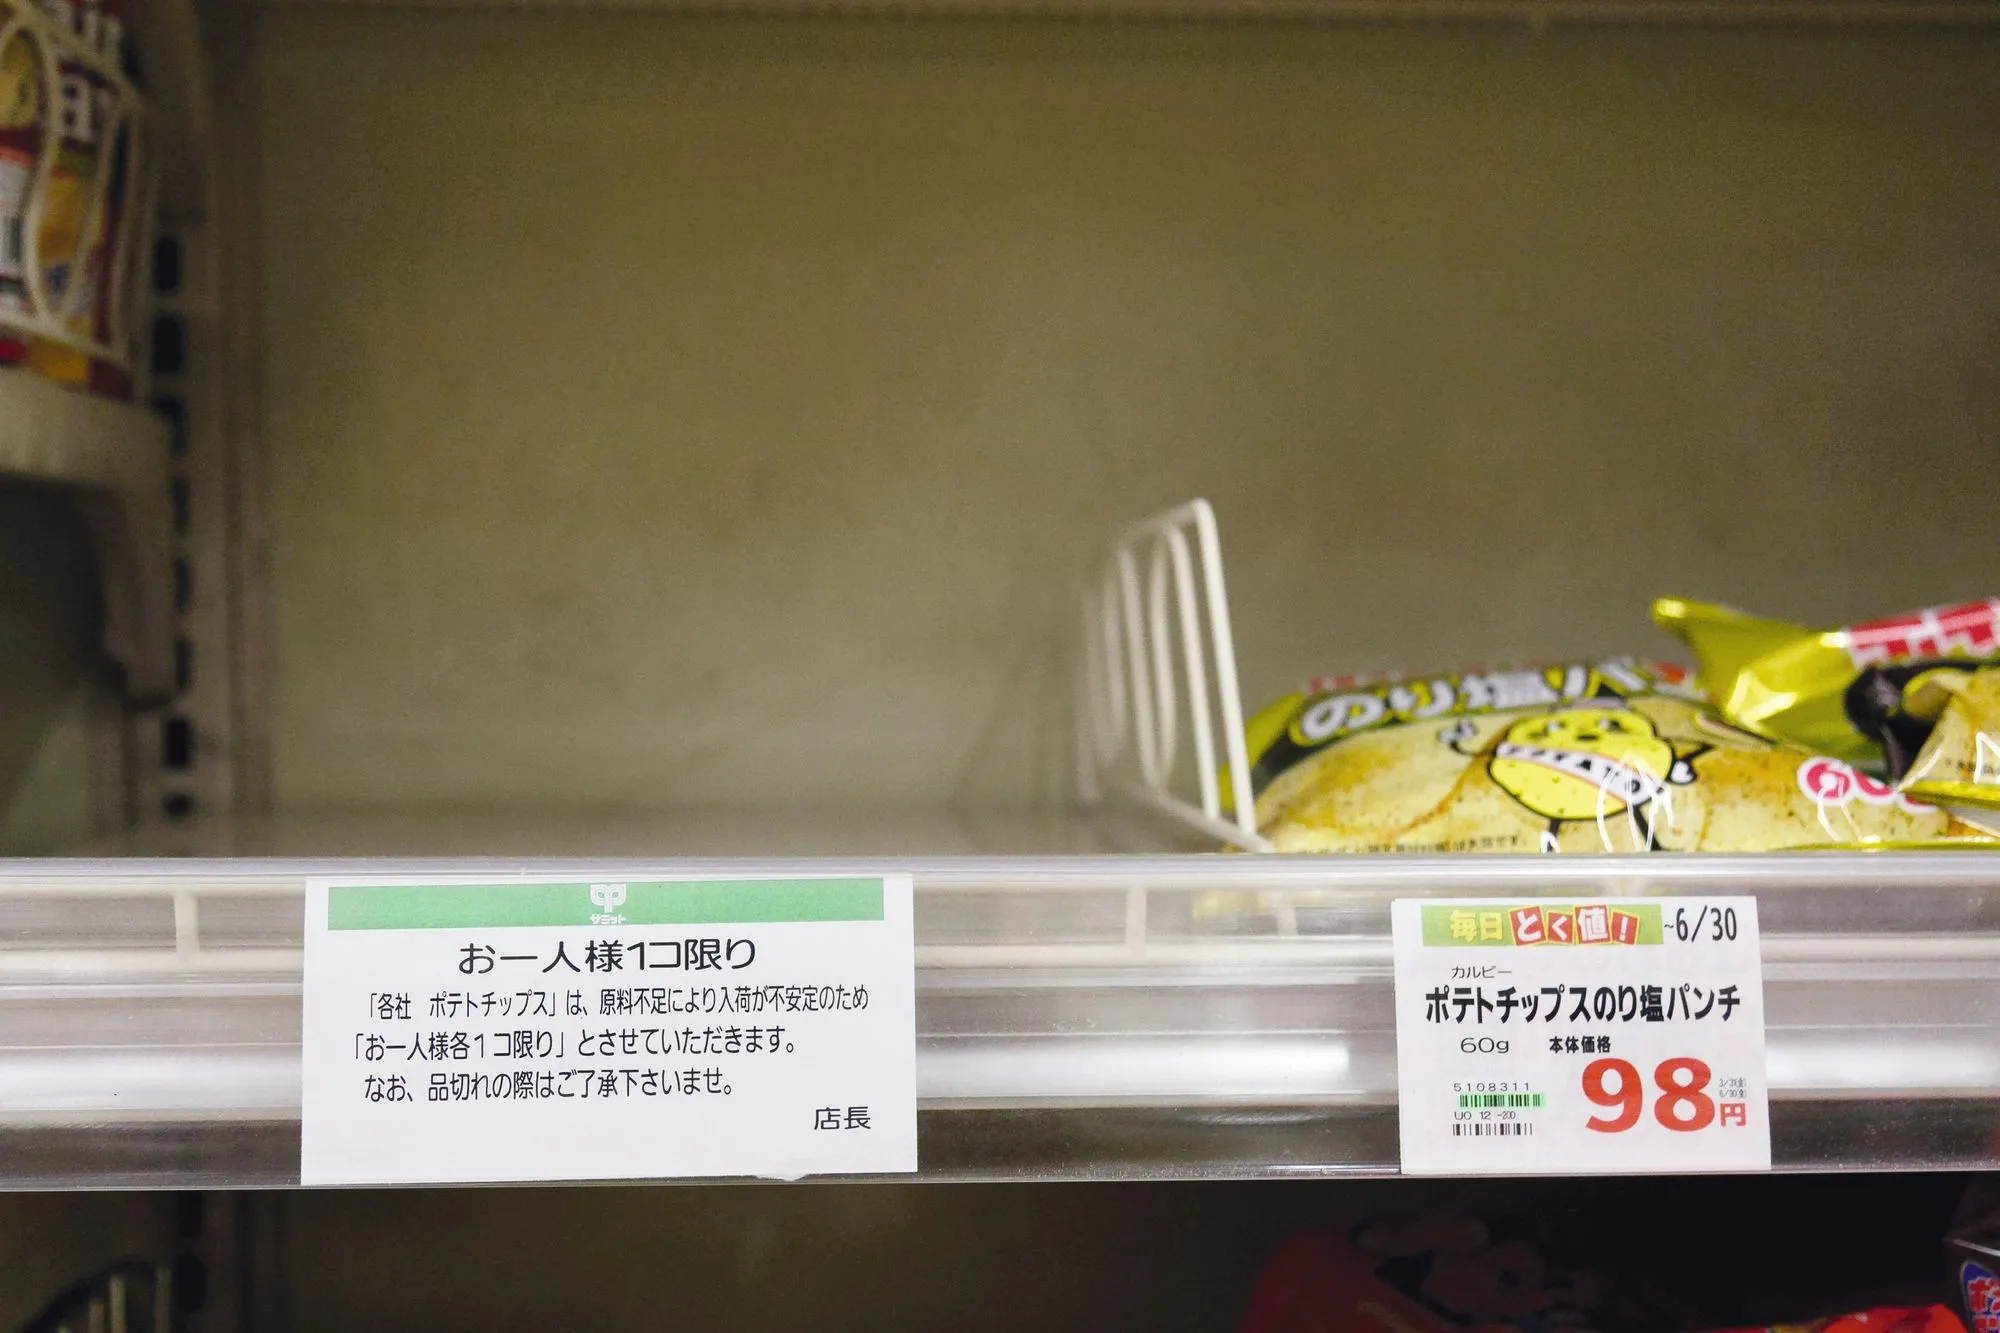 Pourquoi le prix des chips a-t-il explosé au Japon ?